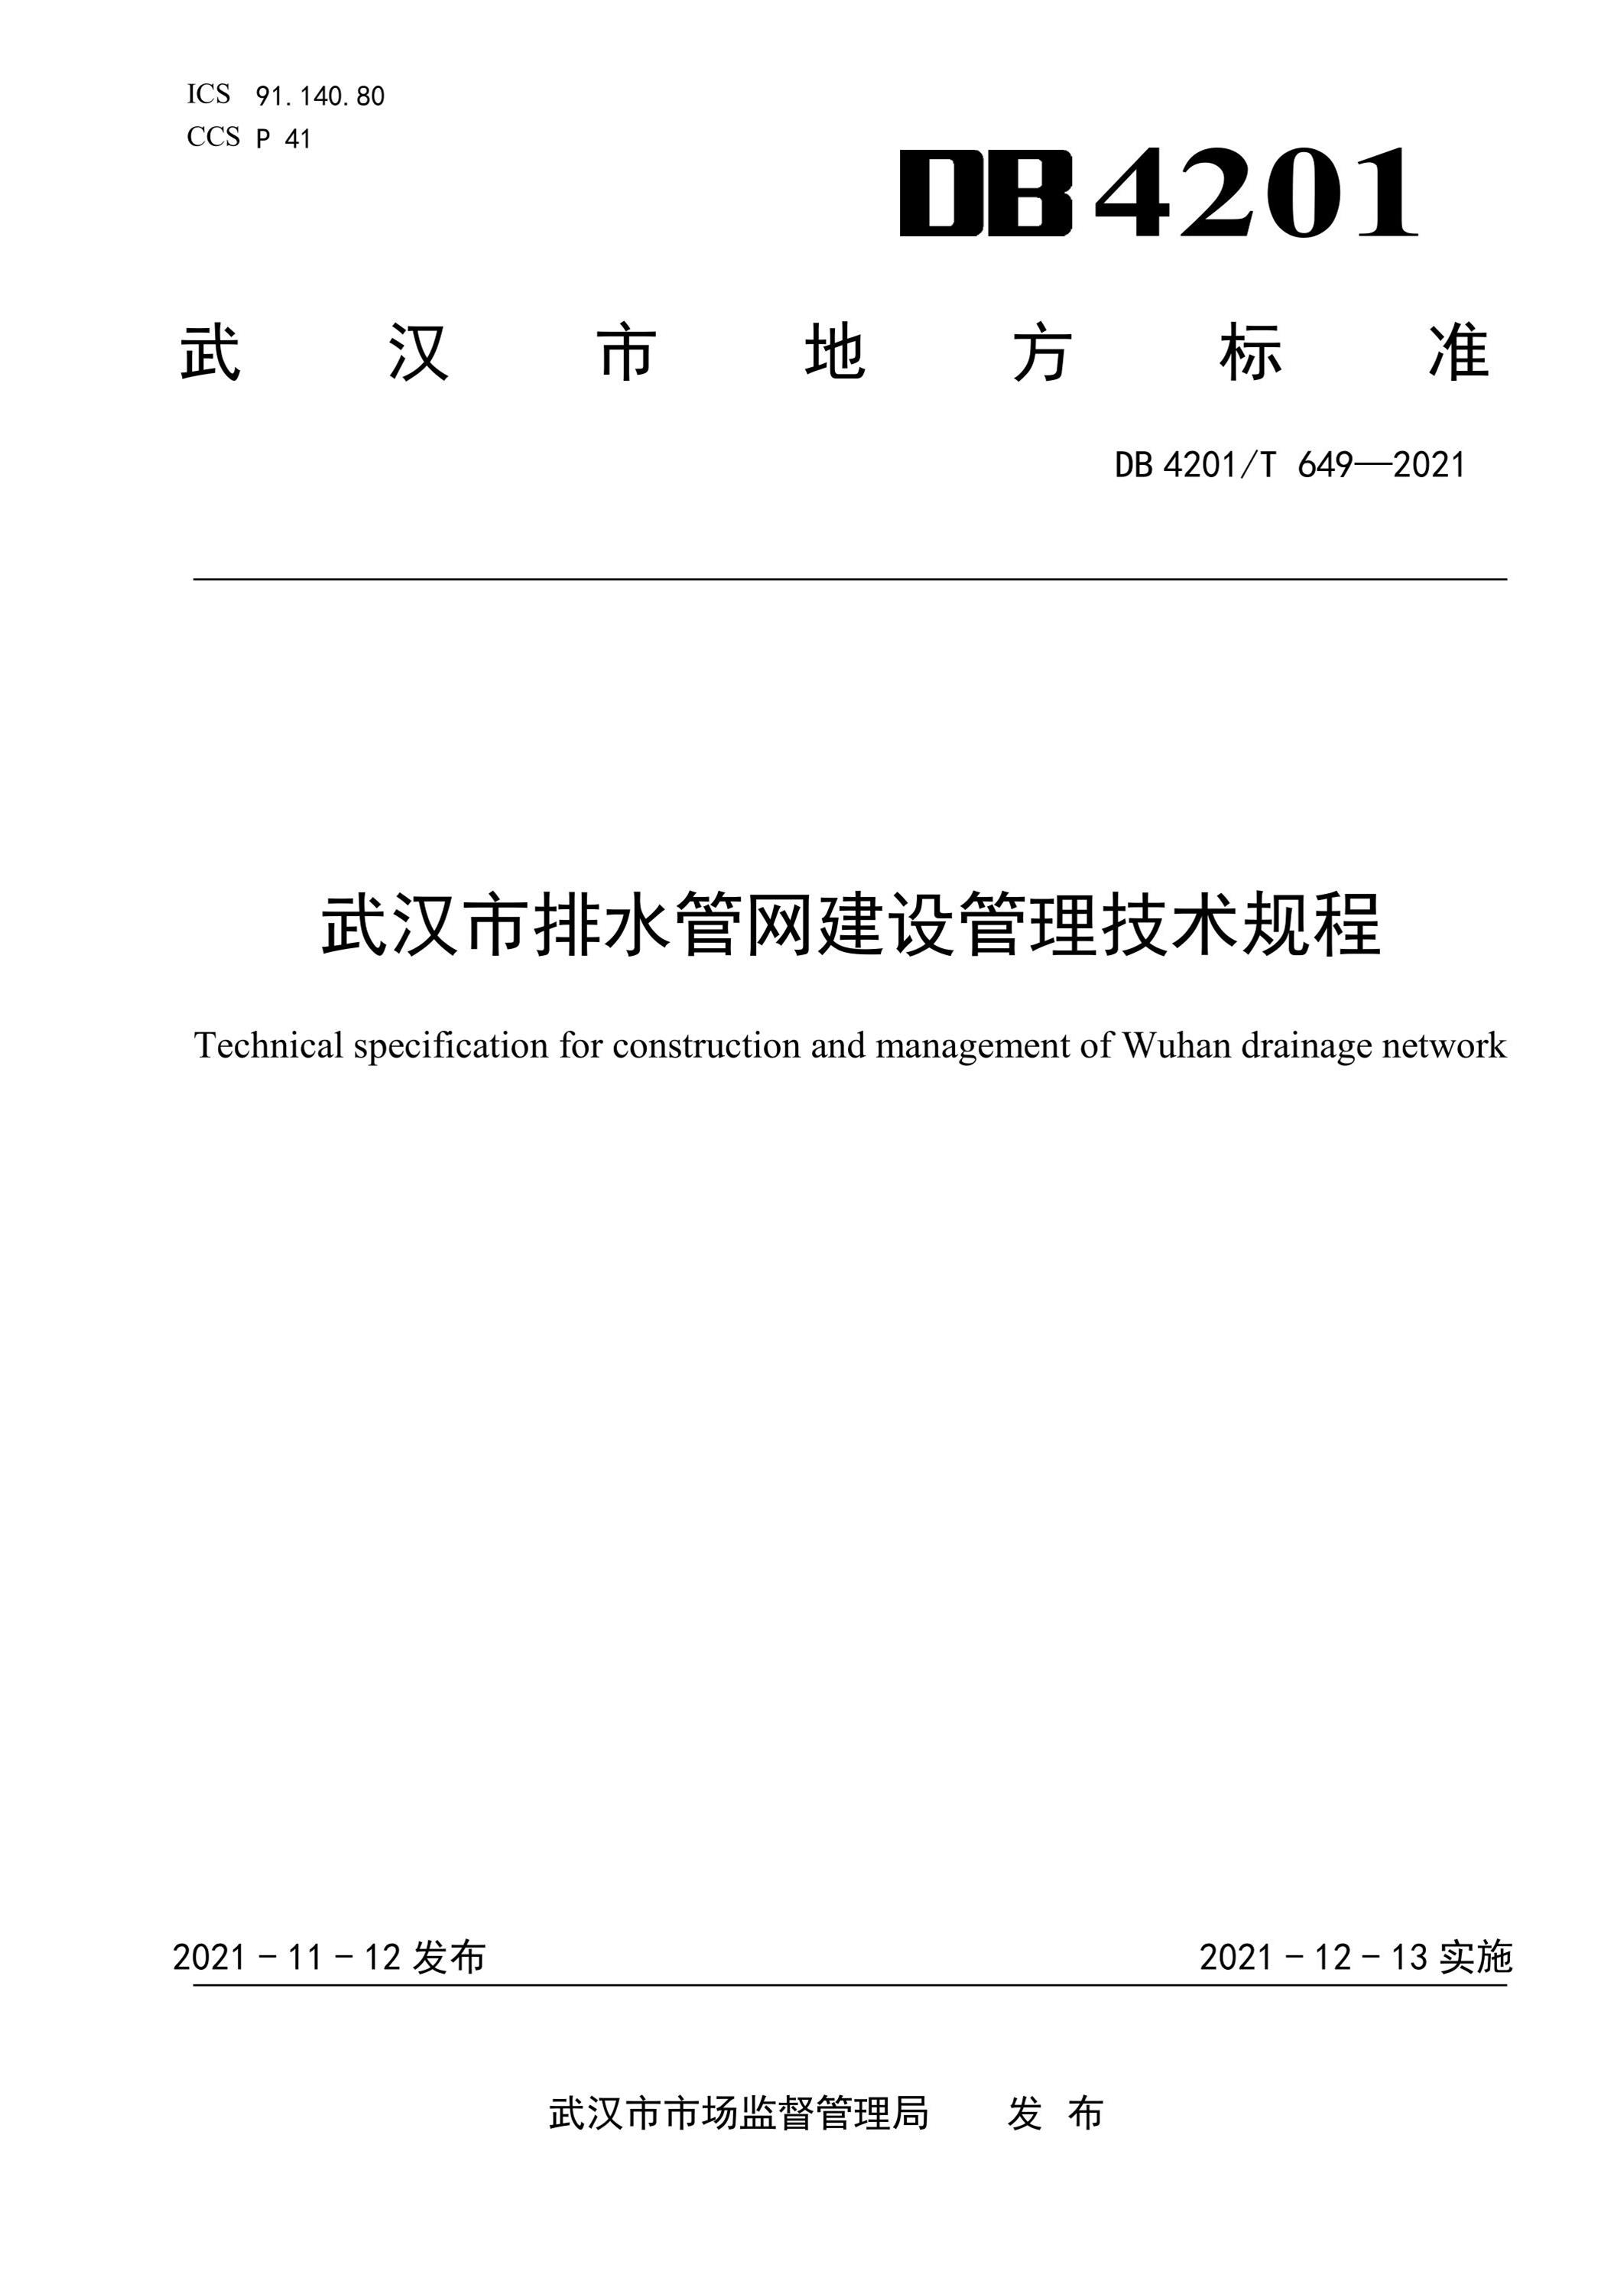 DB4201∕T 649-2021 武汉市排水管网建设管理技术规程资源截图